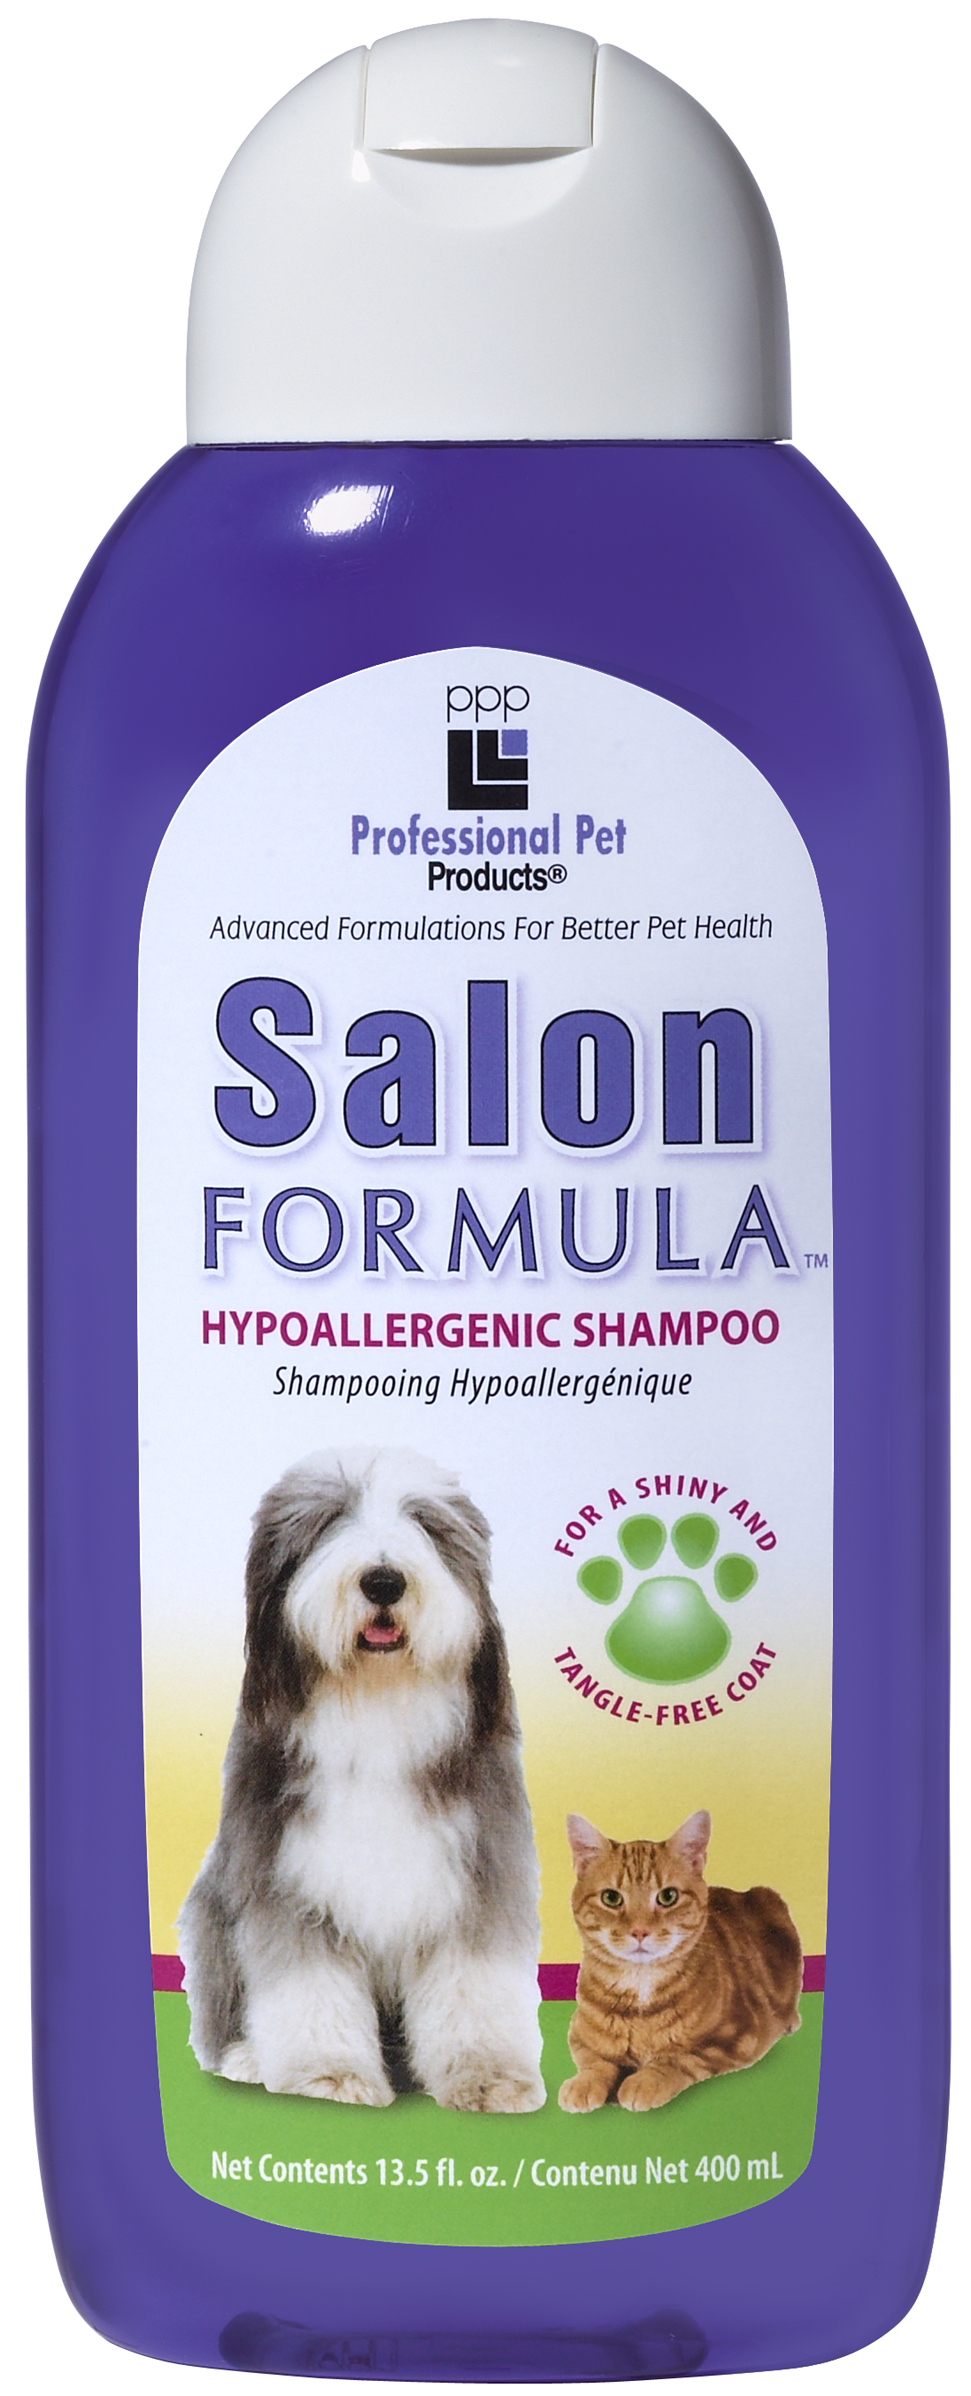 A310 Salon Formula Shampoo.jpg